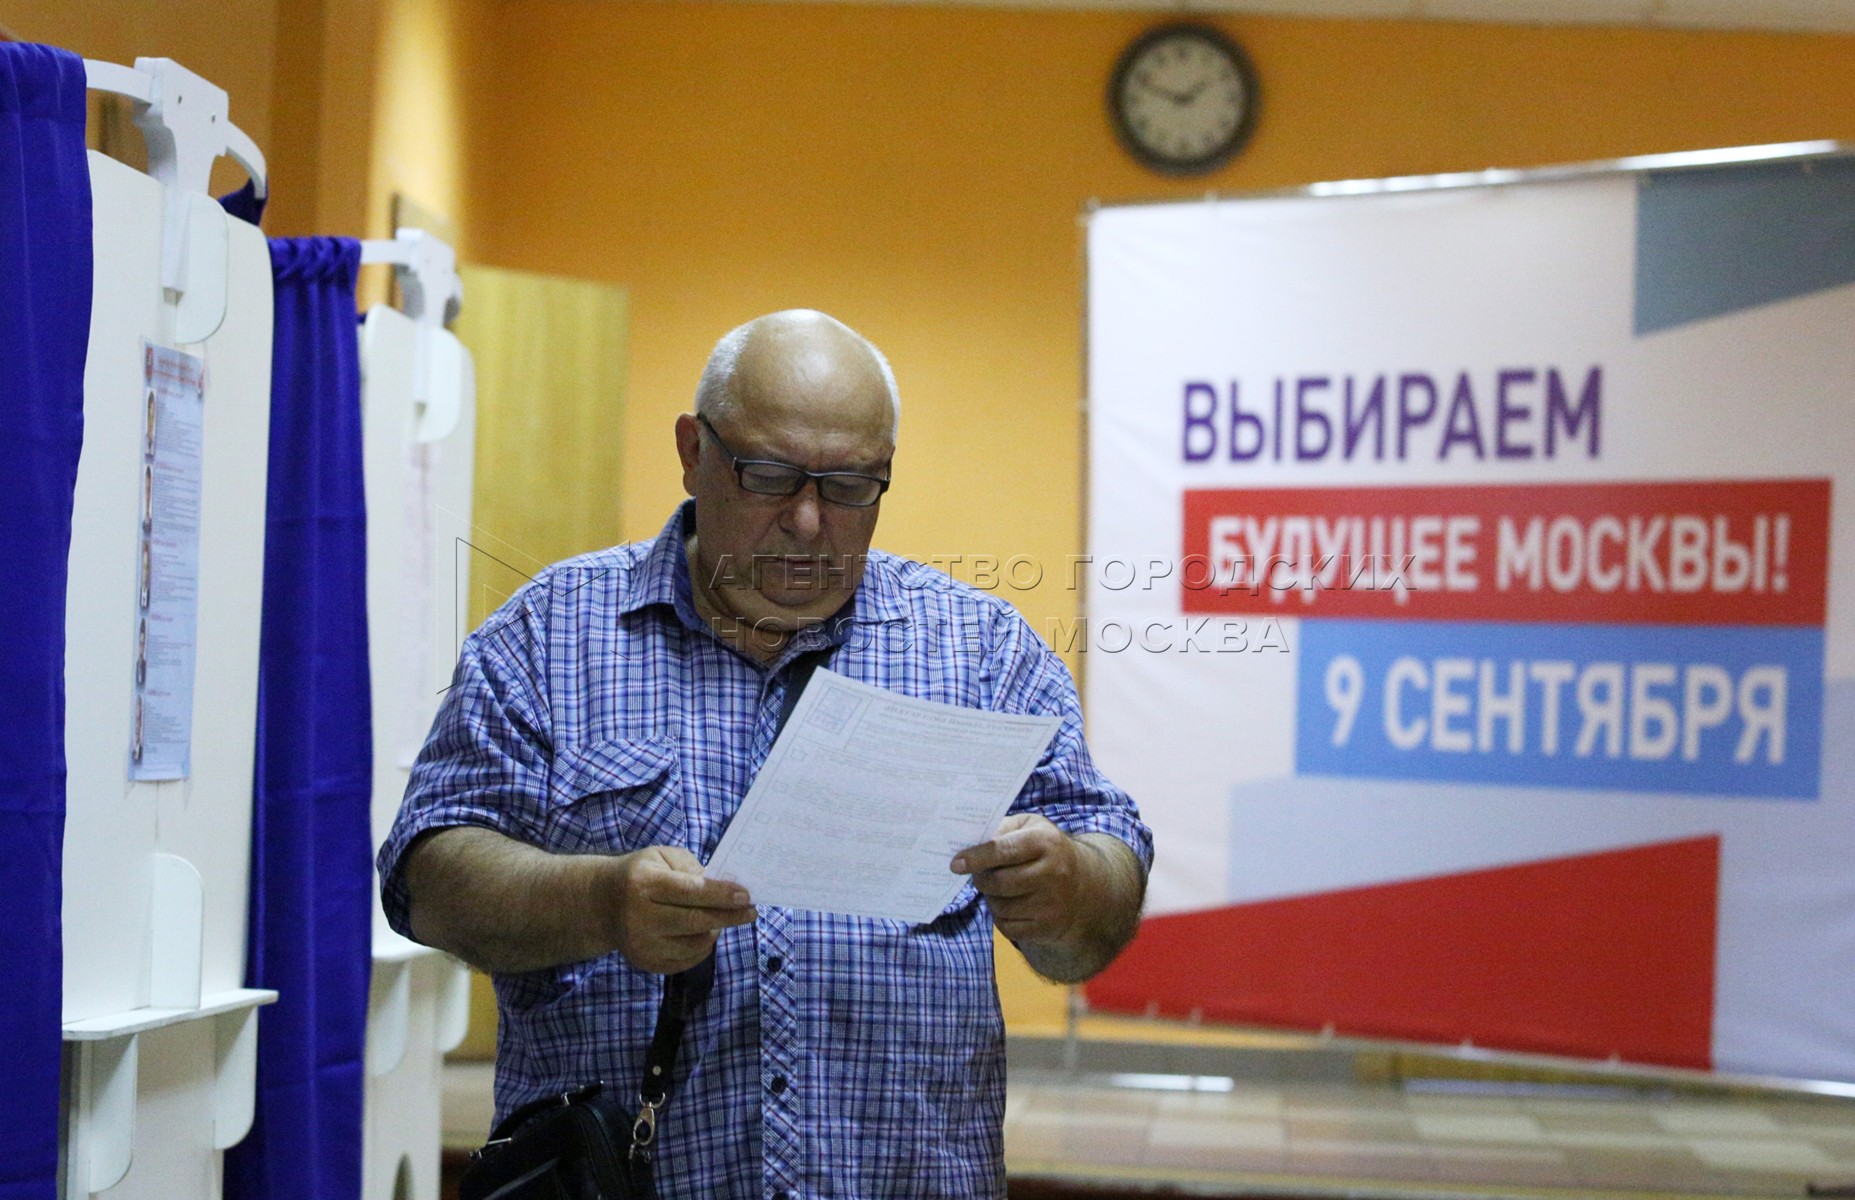 Явка на выборы мэра Москвы. Выборы явка мэр